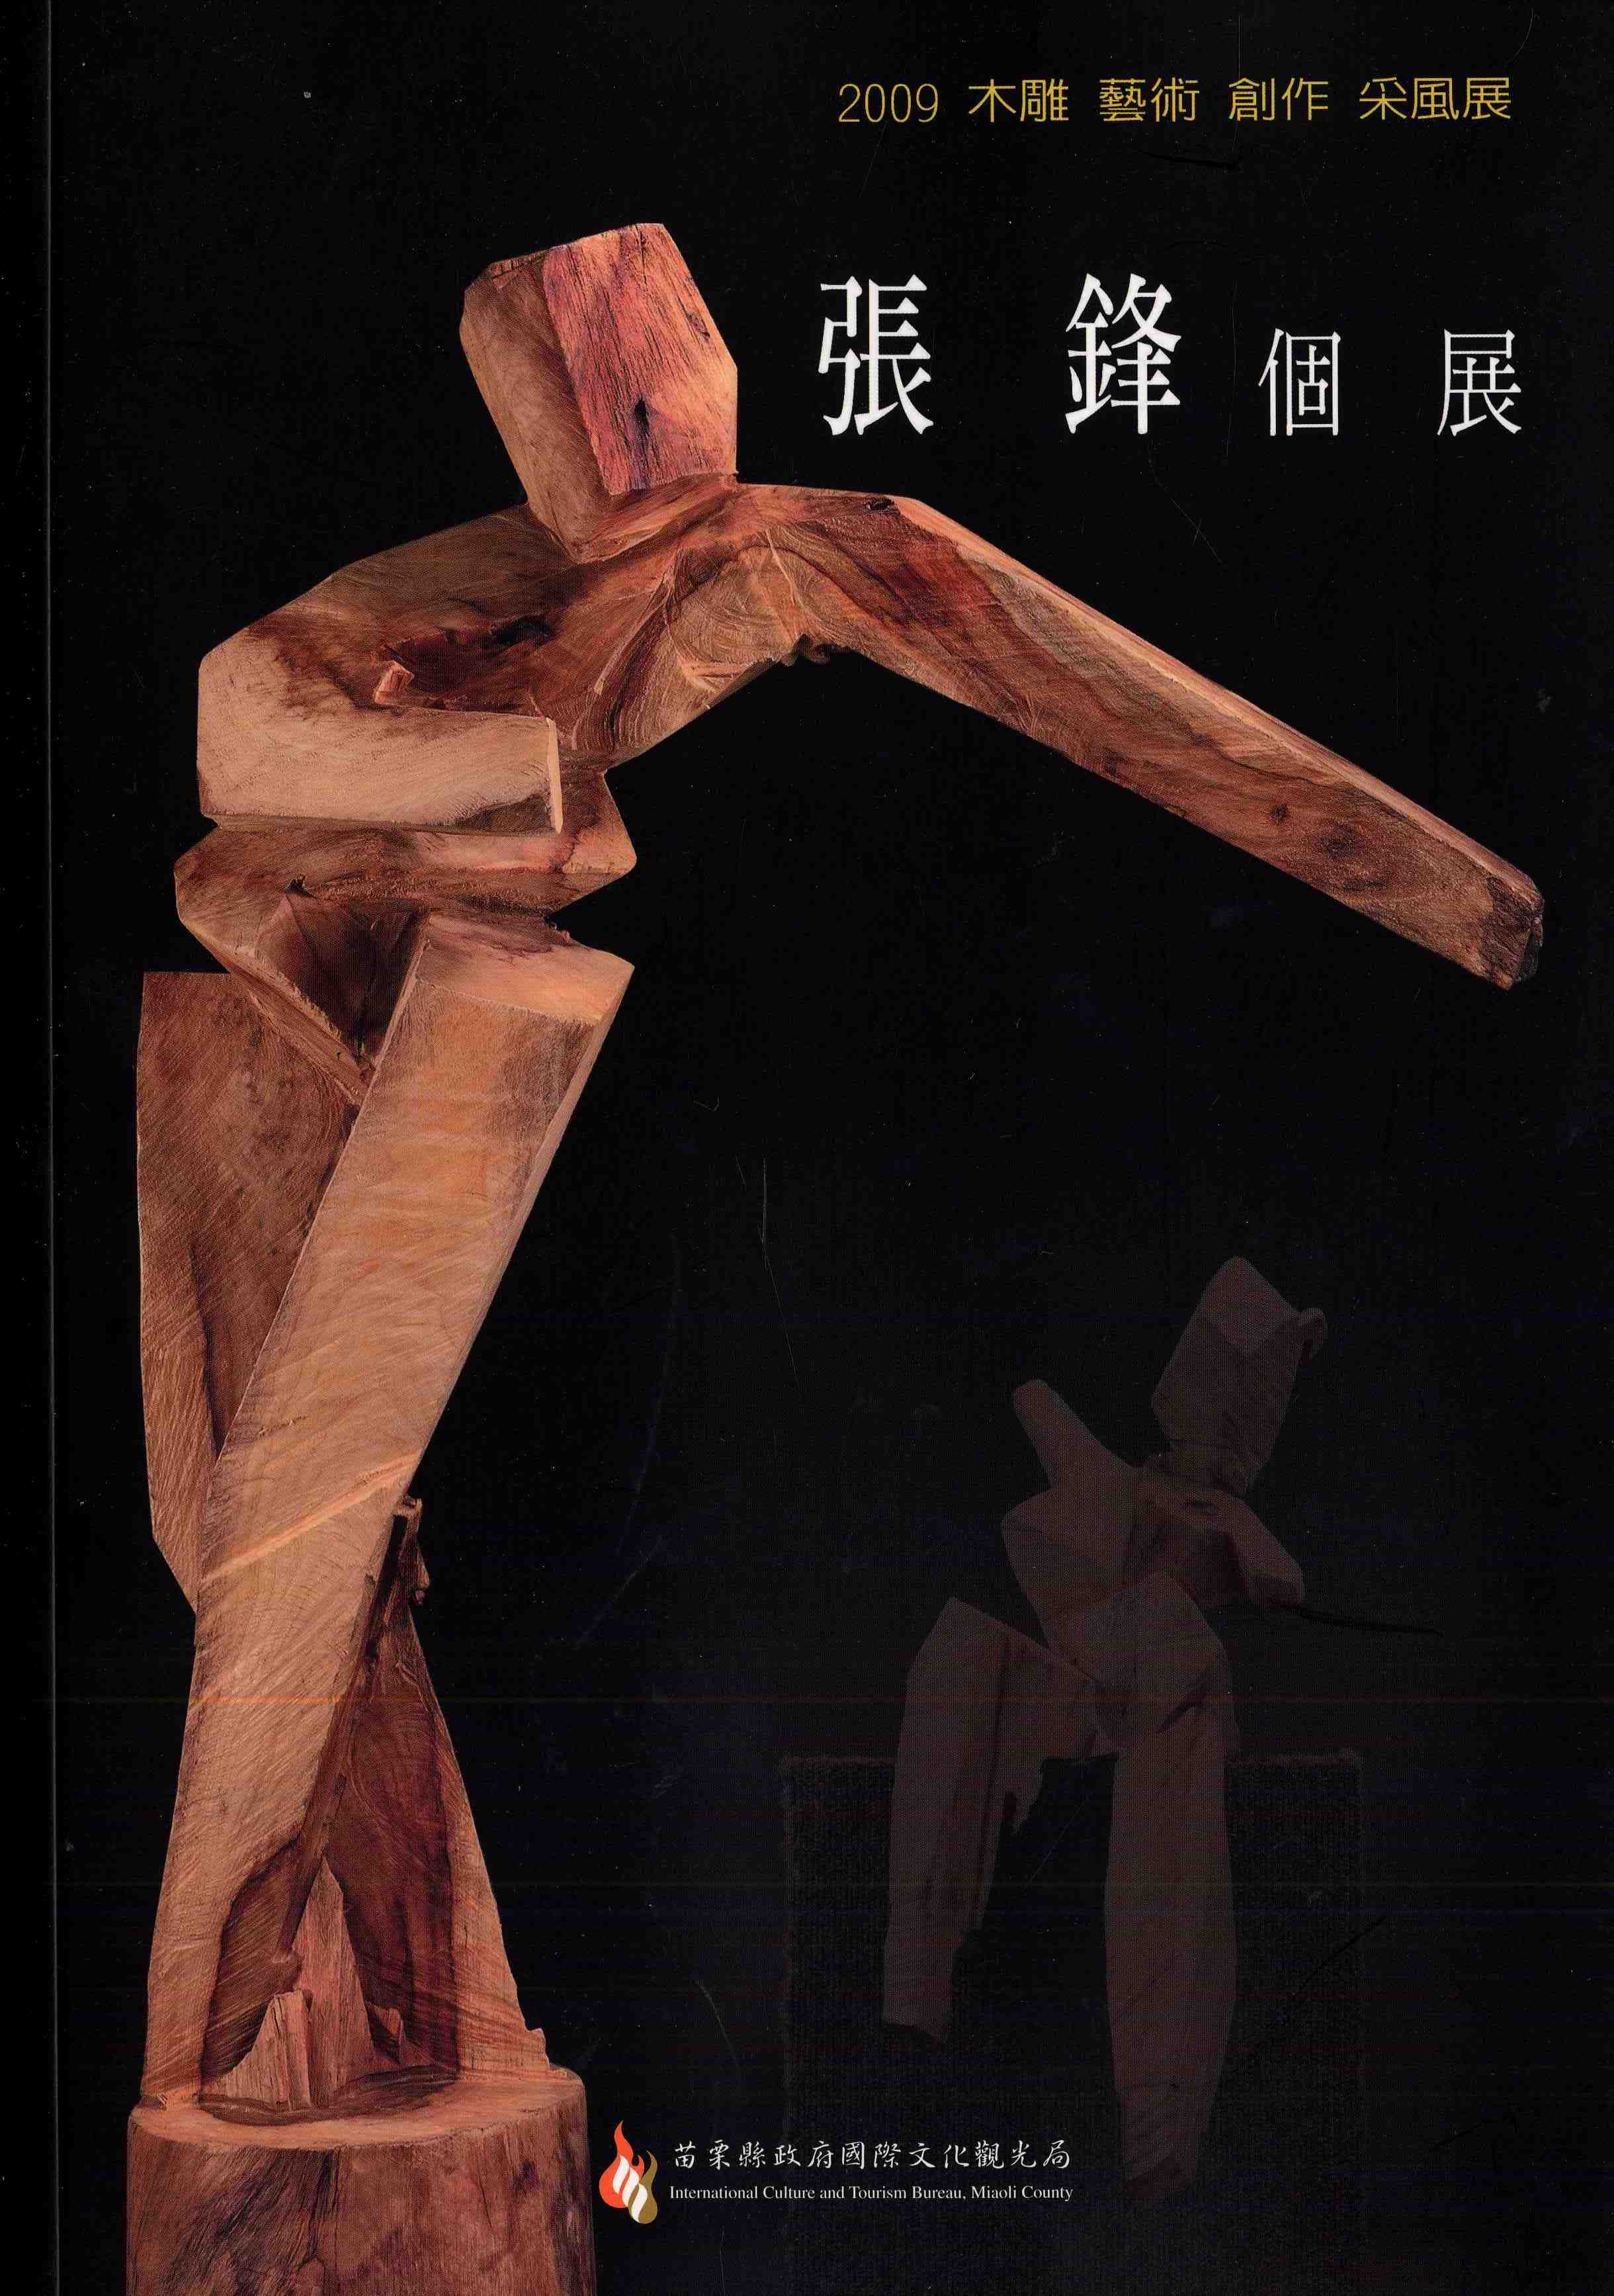 2009木雕藝術創作采風展--張鋒個展